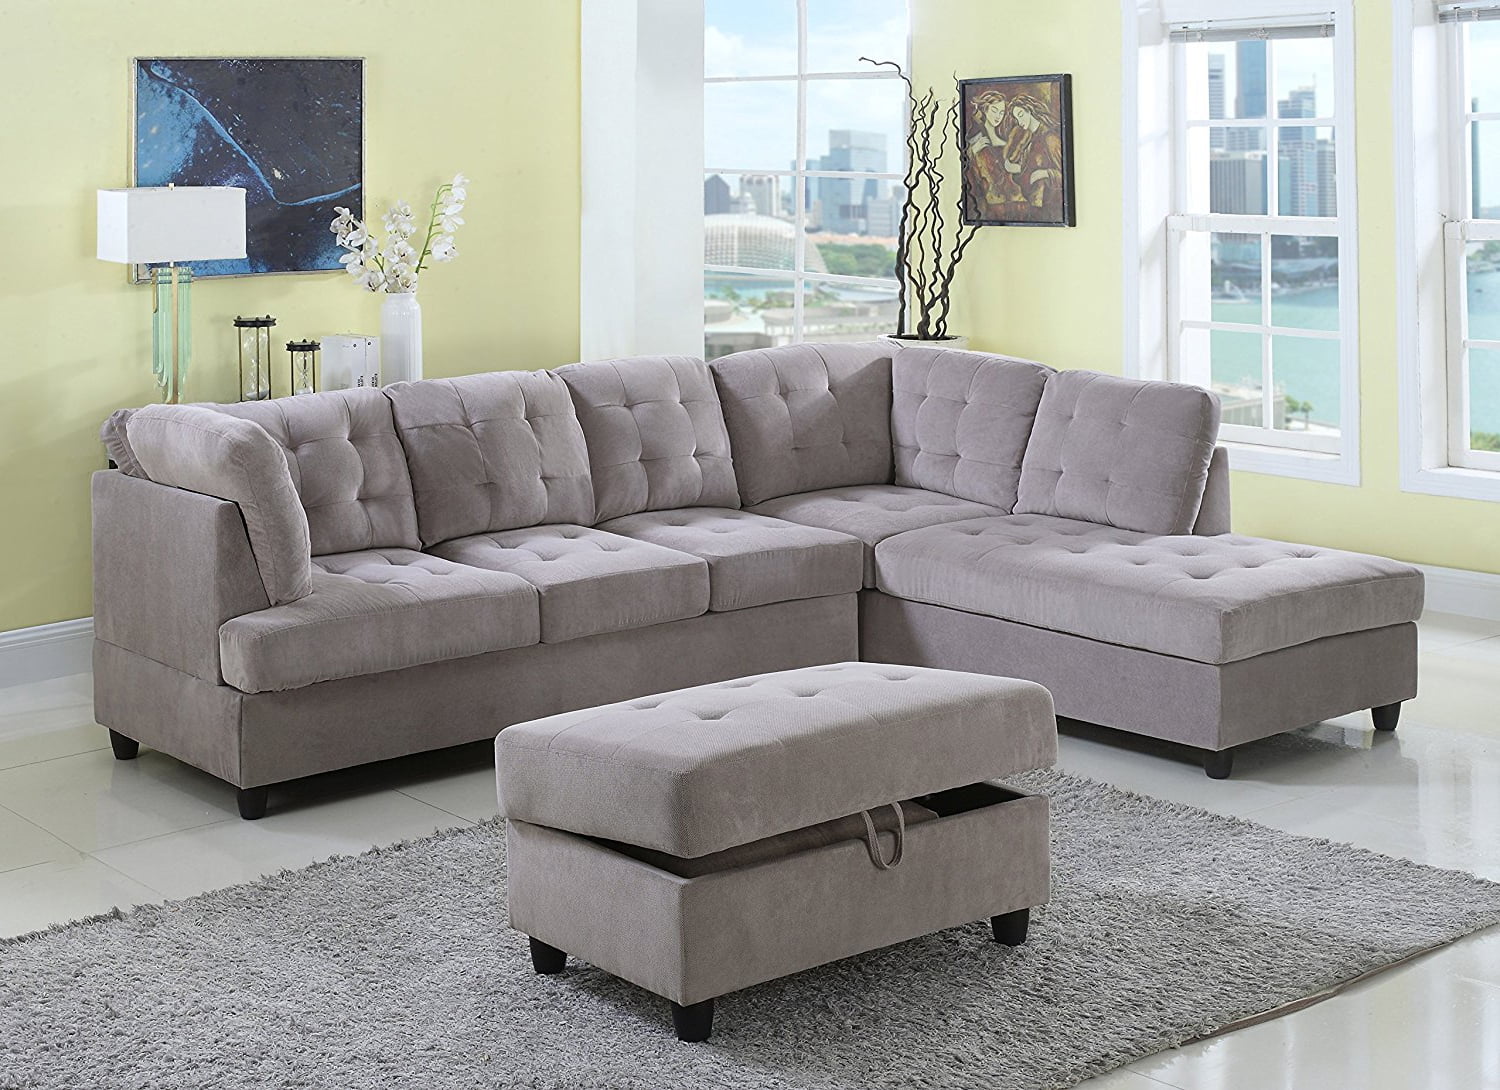 3 Piece Corduroy Contemporary Rightfacing Sectional Sofa